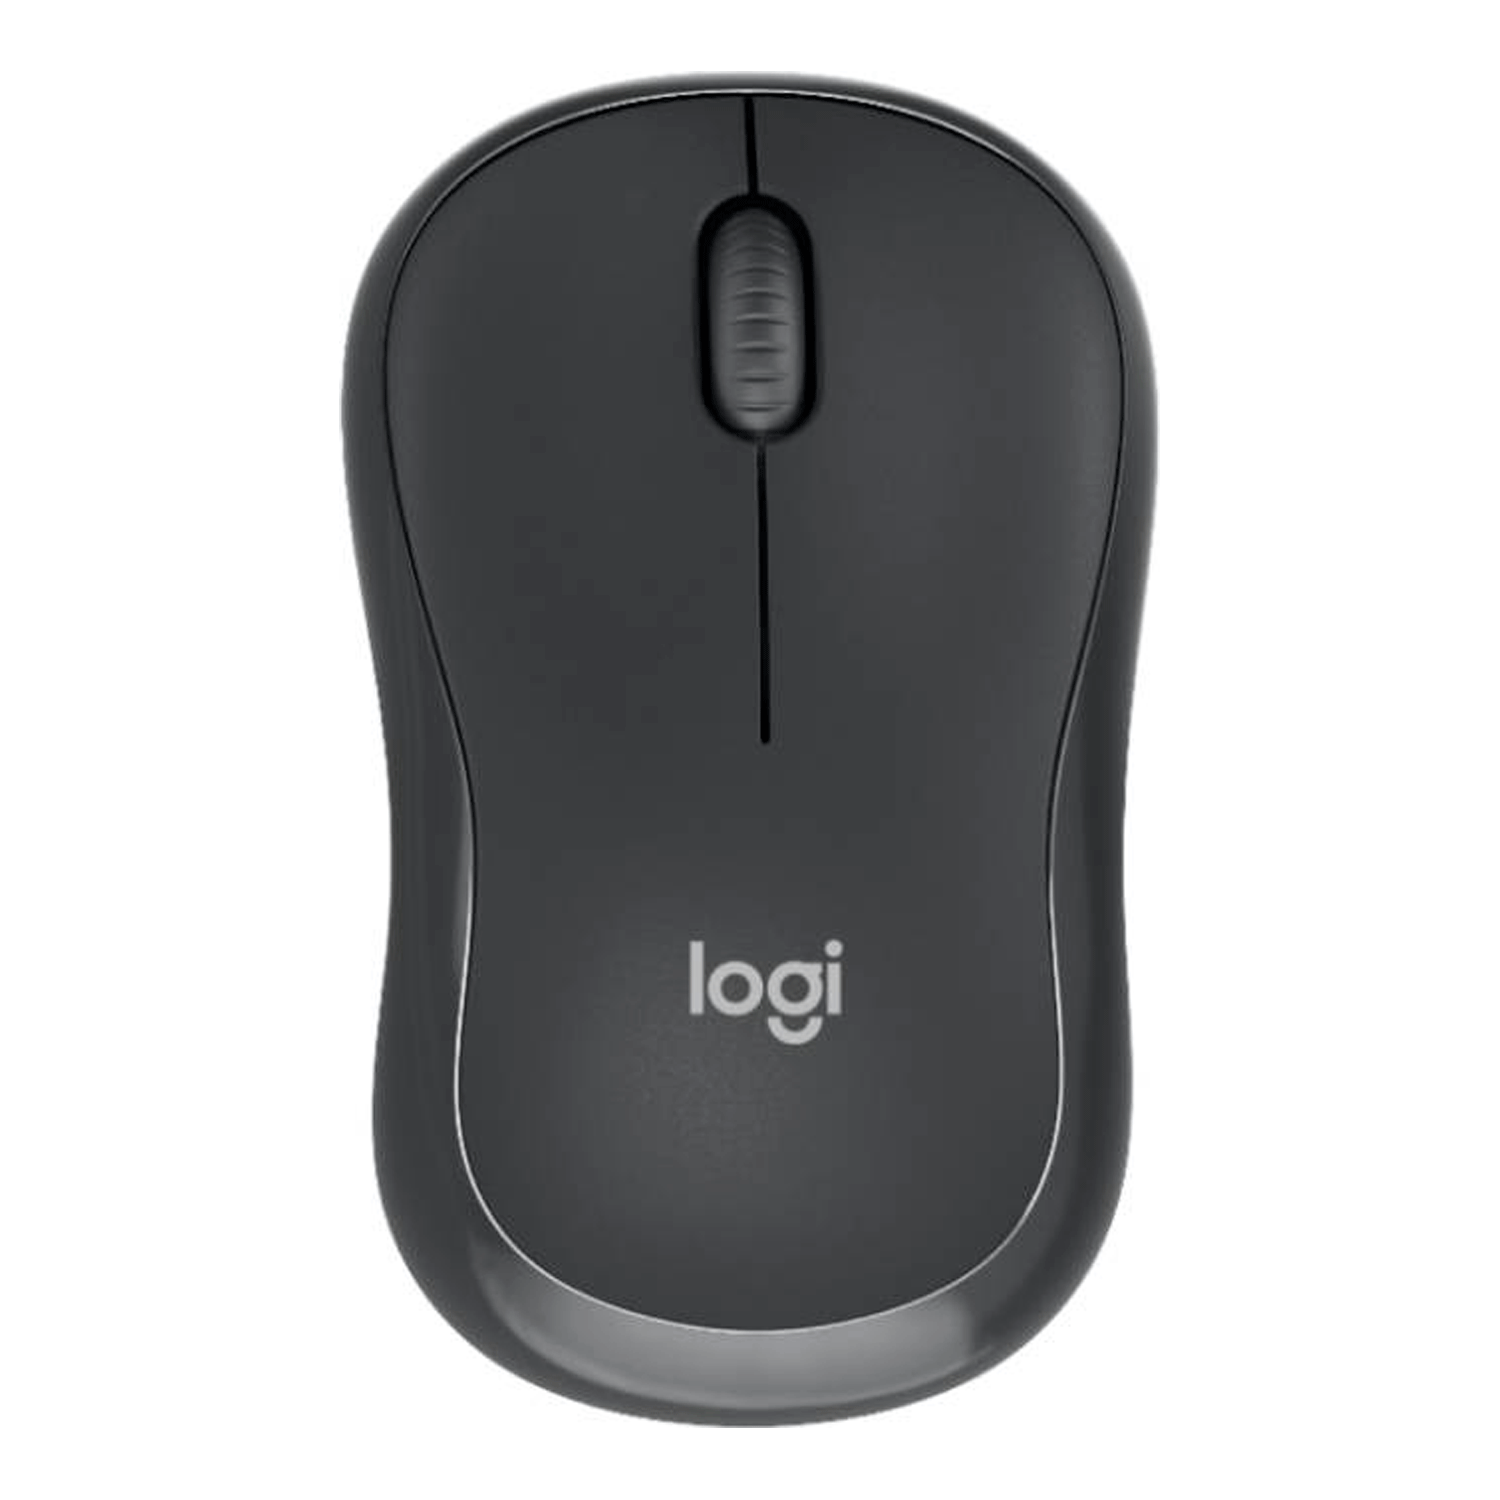 Kit Mouse e Teclado Logitech MK370 Wireless Inglês - Preto (920-011887)